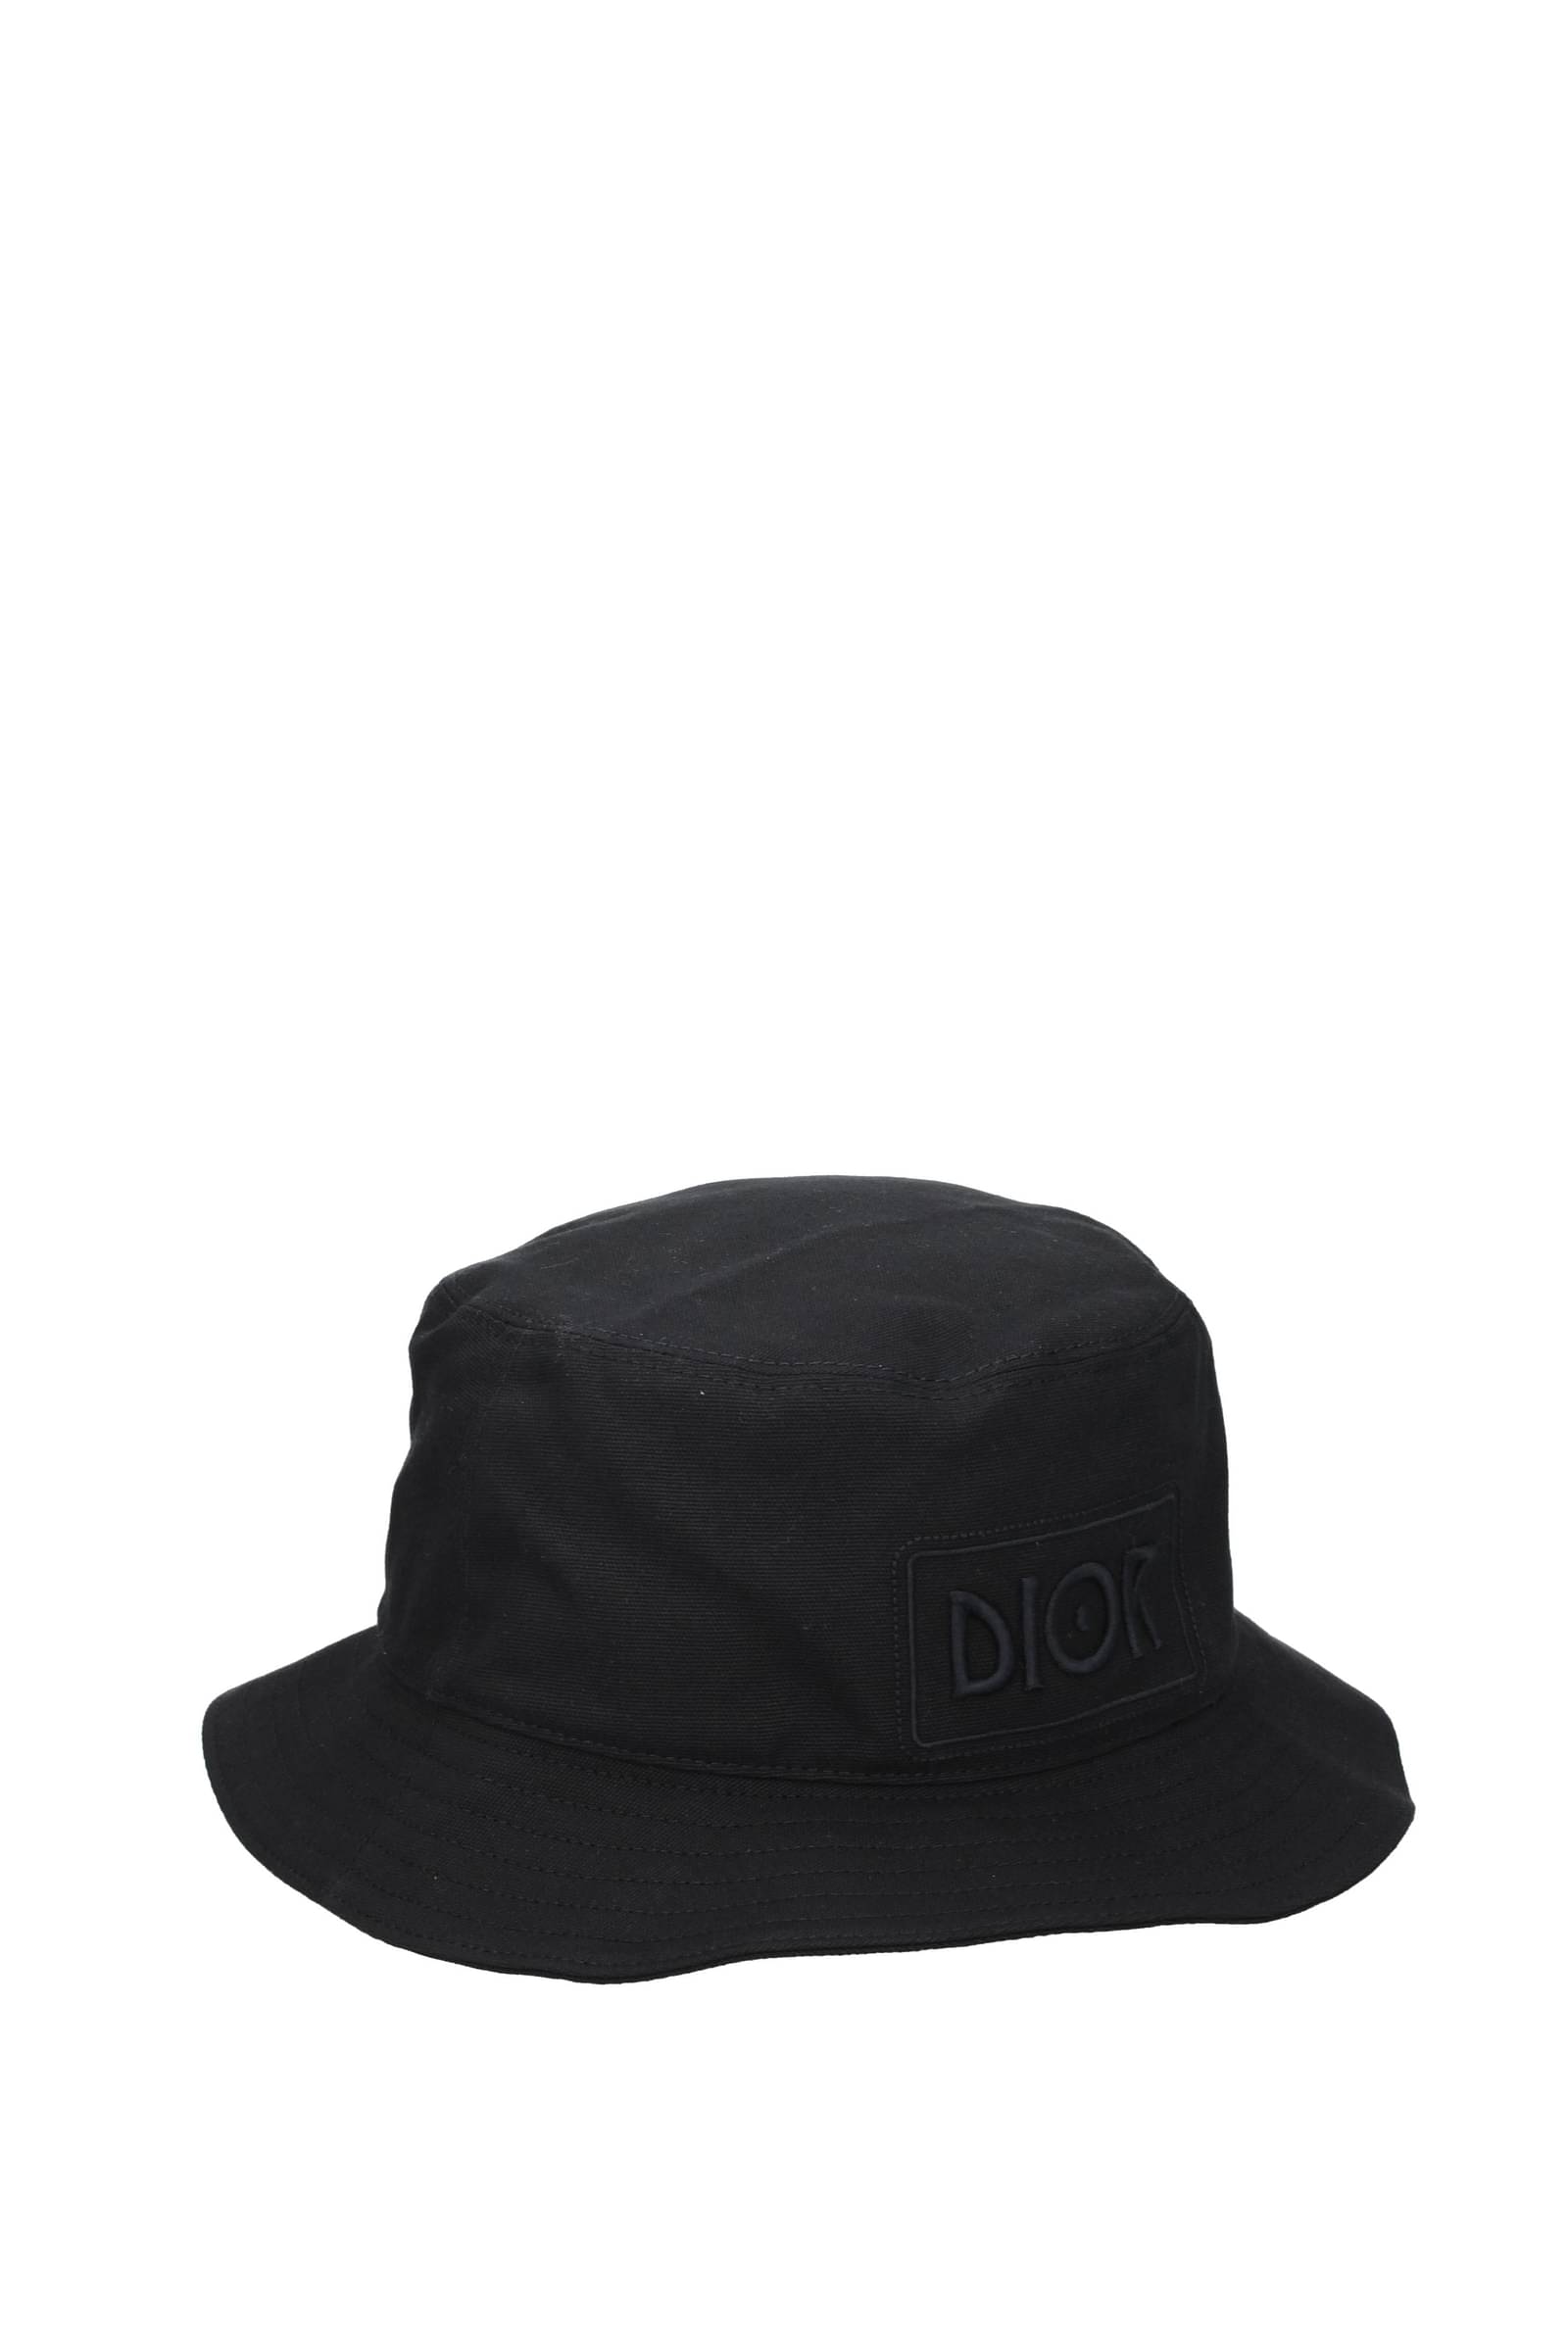 Shop Mens Dior Hats  BUYMA